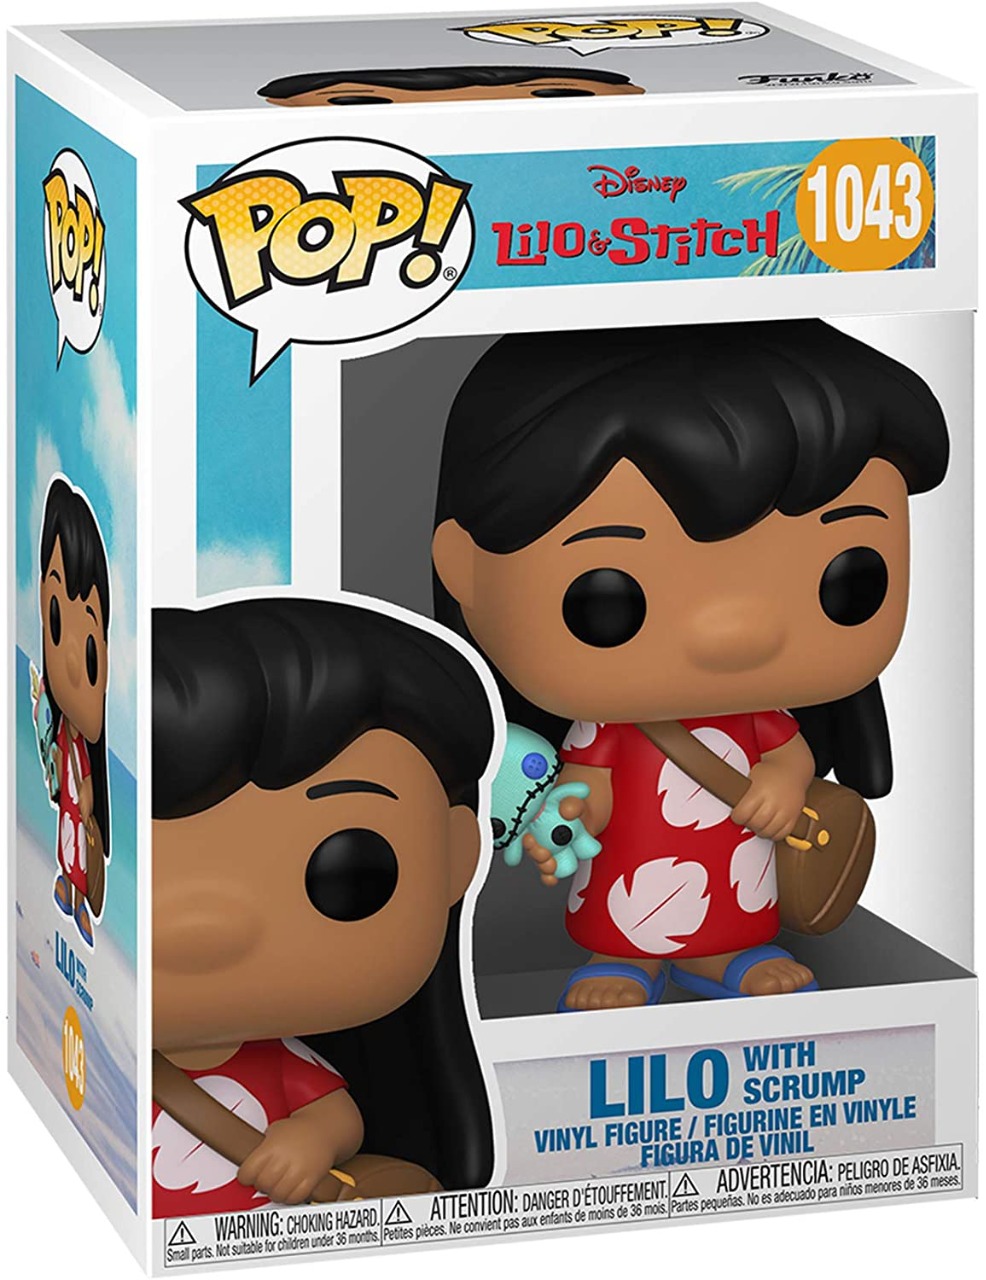 Funko Pop Lilo & Stitch - Lilo with Scrump 1043